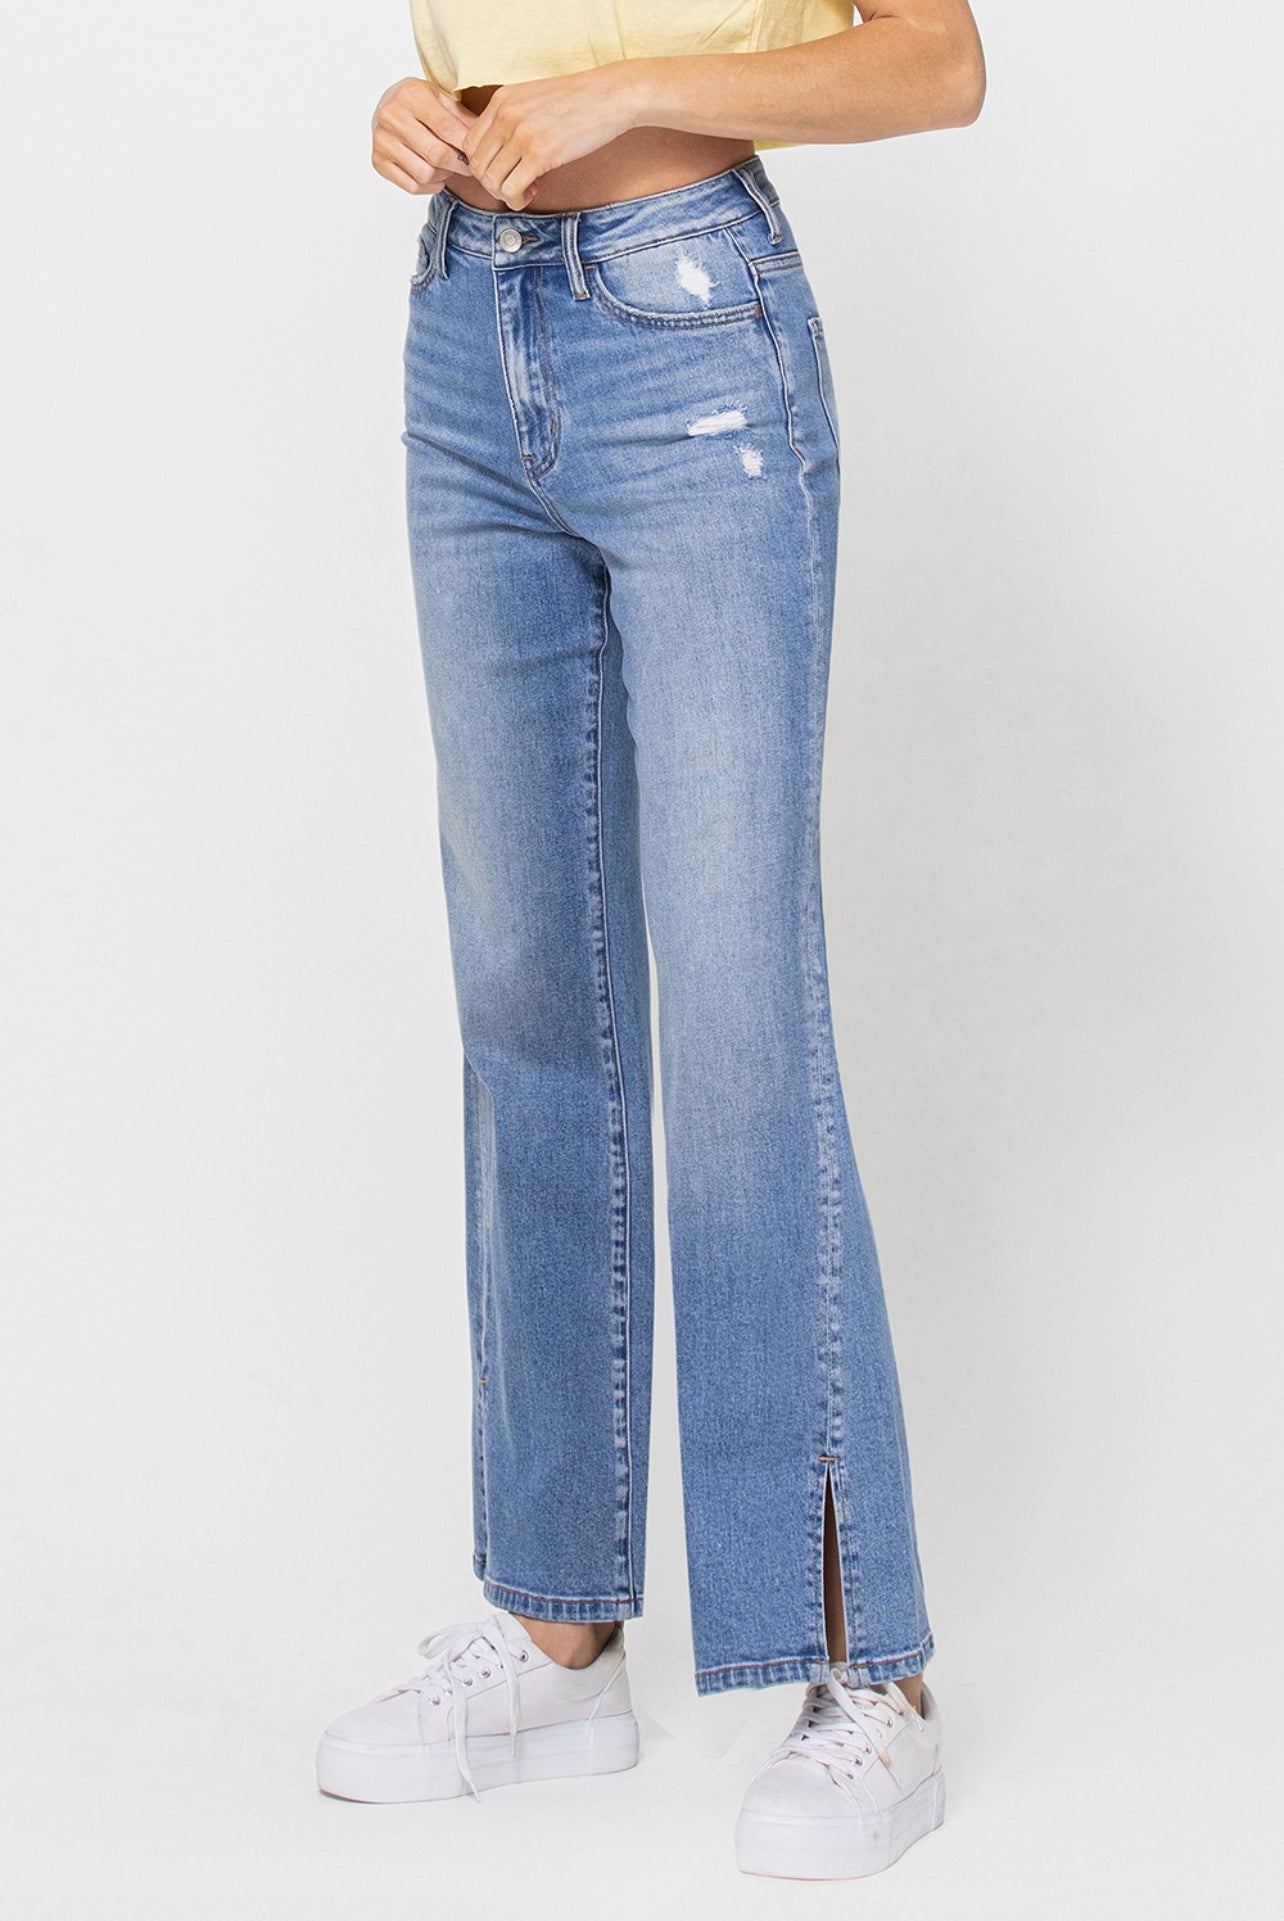 Unwind HR Vintage Jeans